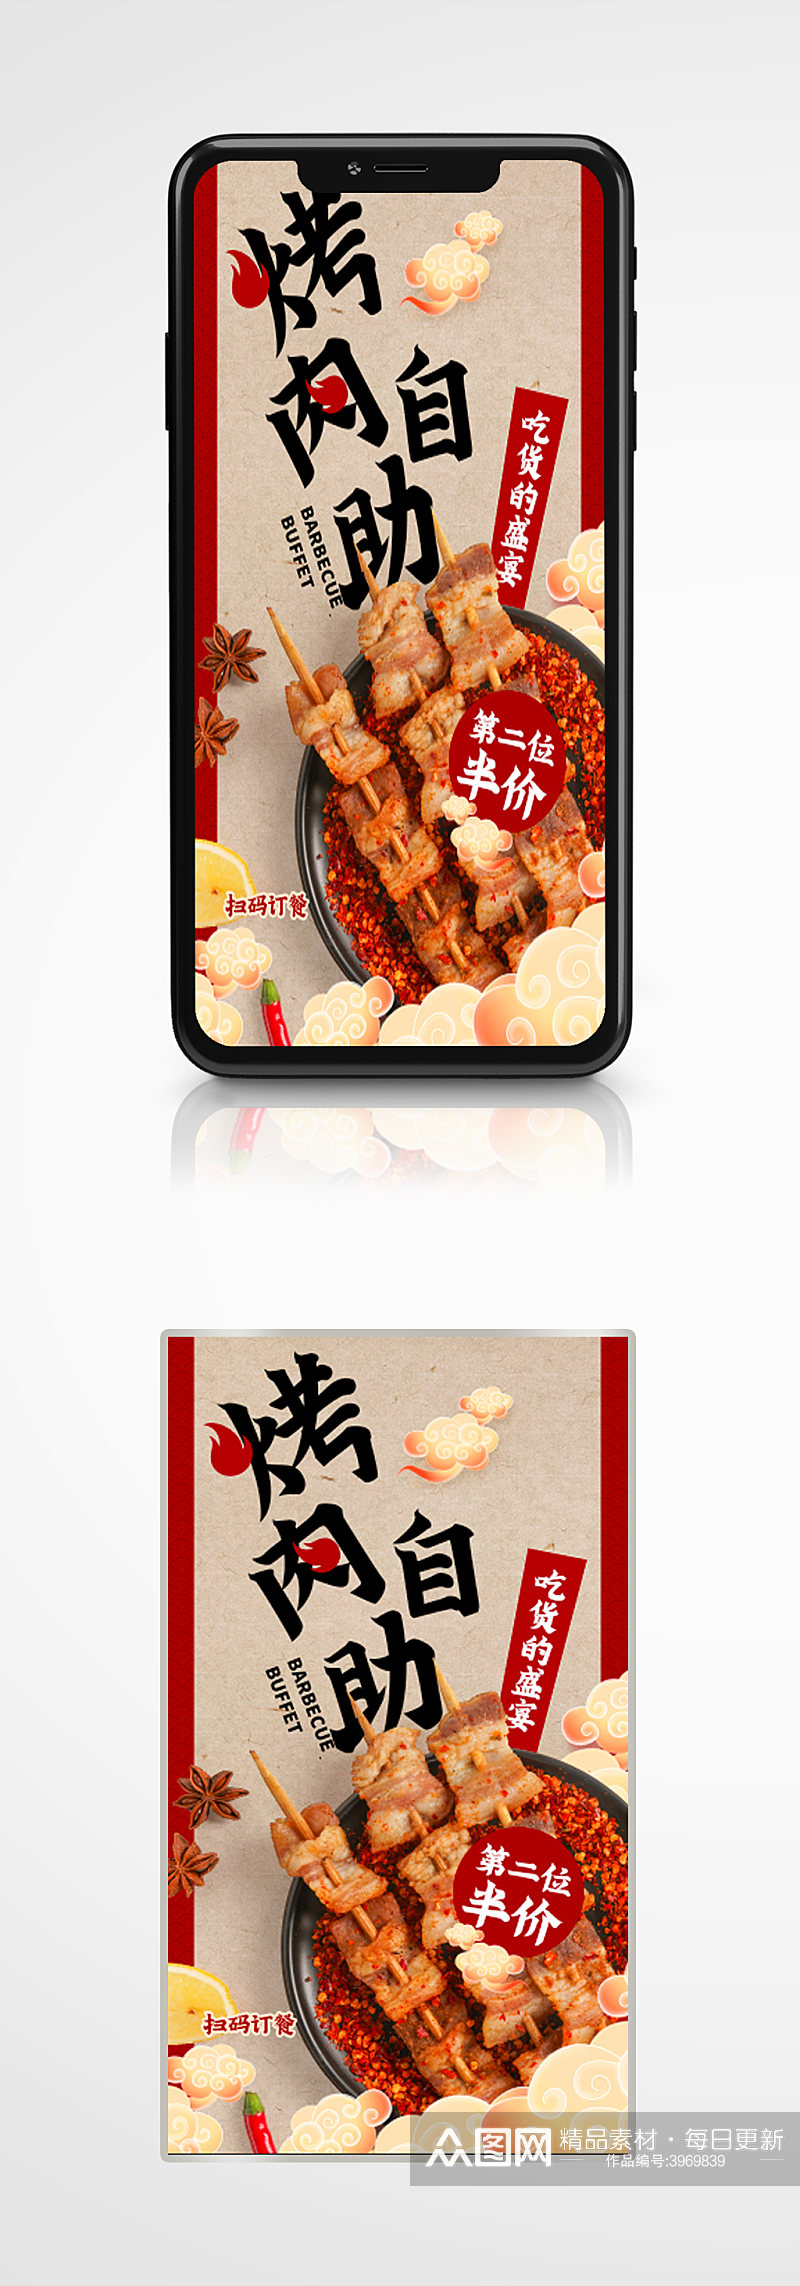 火锅烧烤自助餐饮美食手机海报餐厅素材